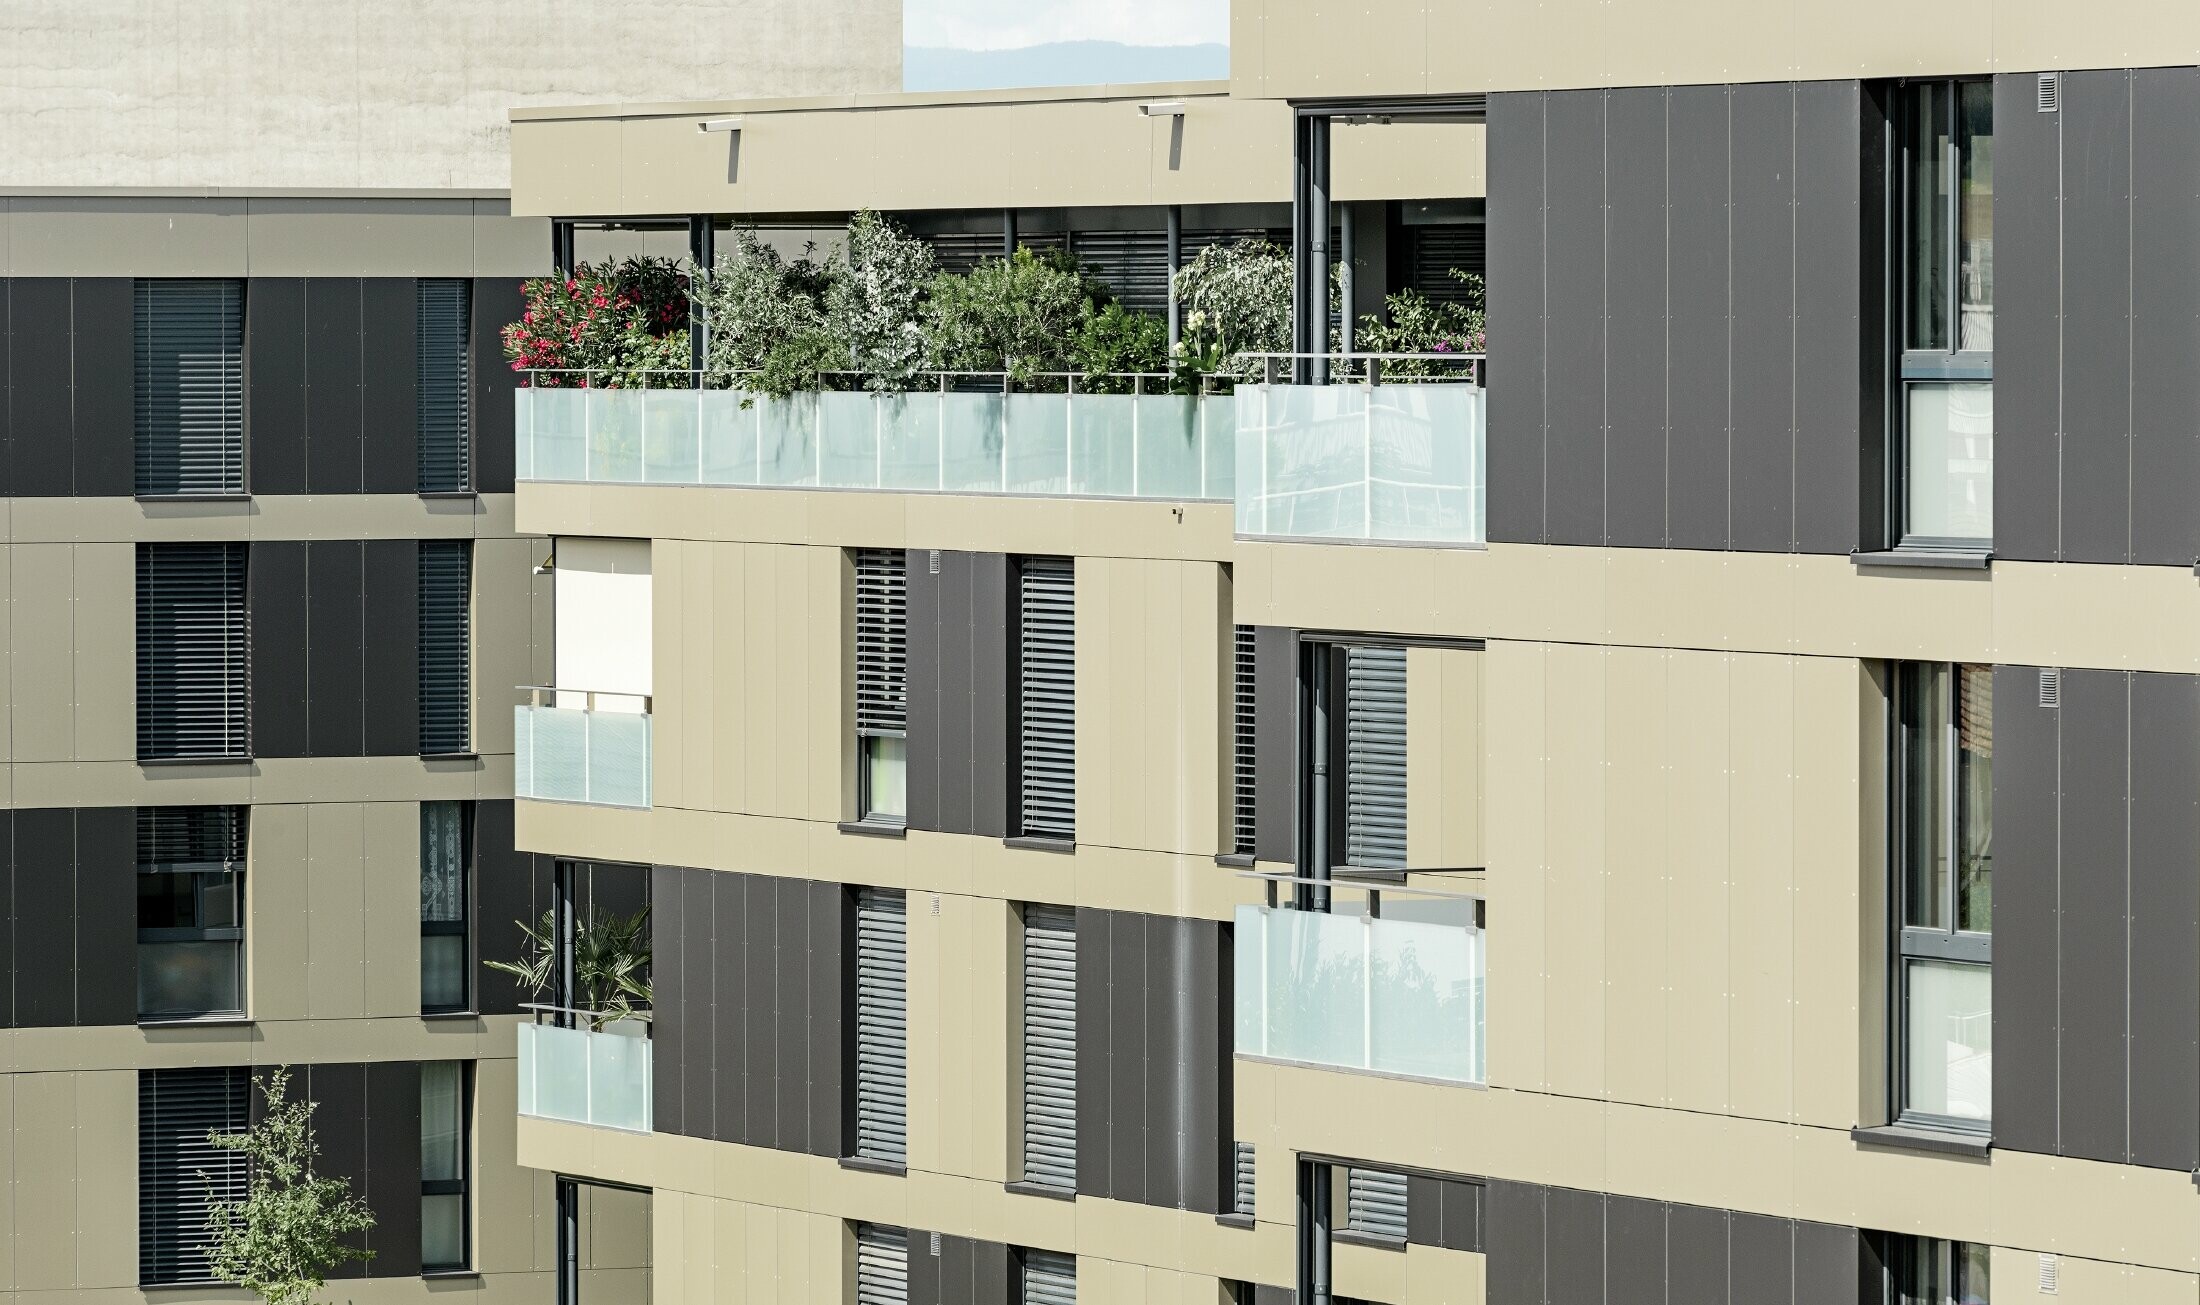 Complexe résidentiel aux immeubles cubiques — Façades en aluminium PREFA de couleur bronze avec des éléments gris noir